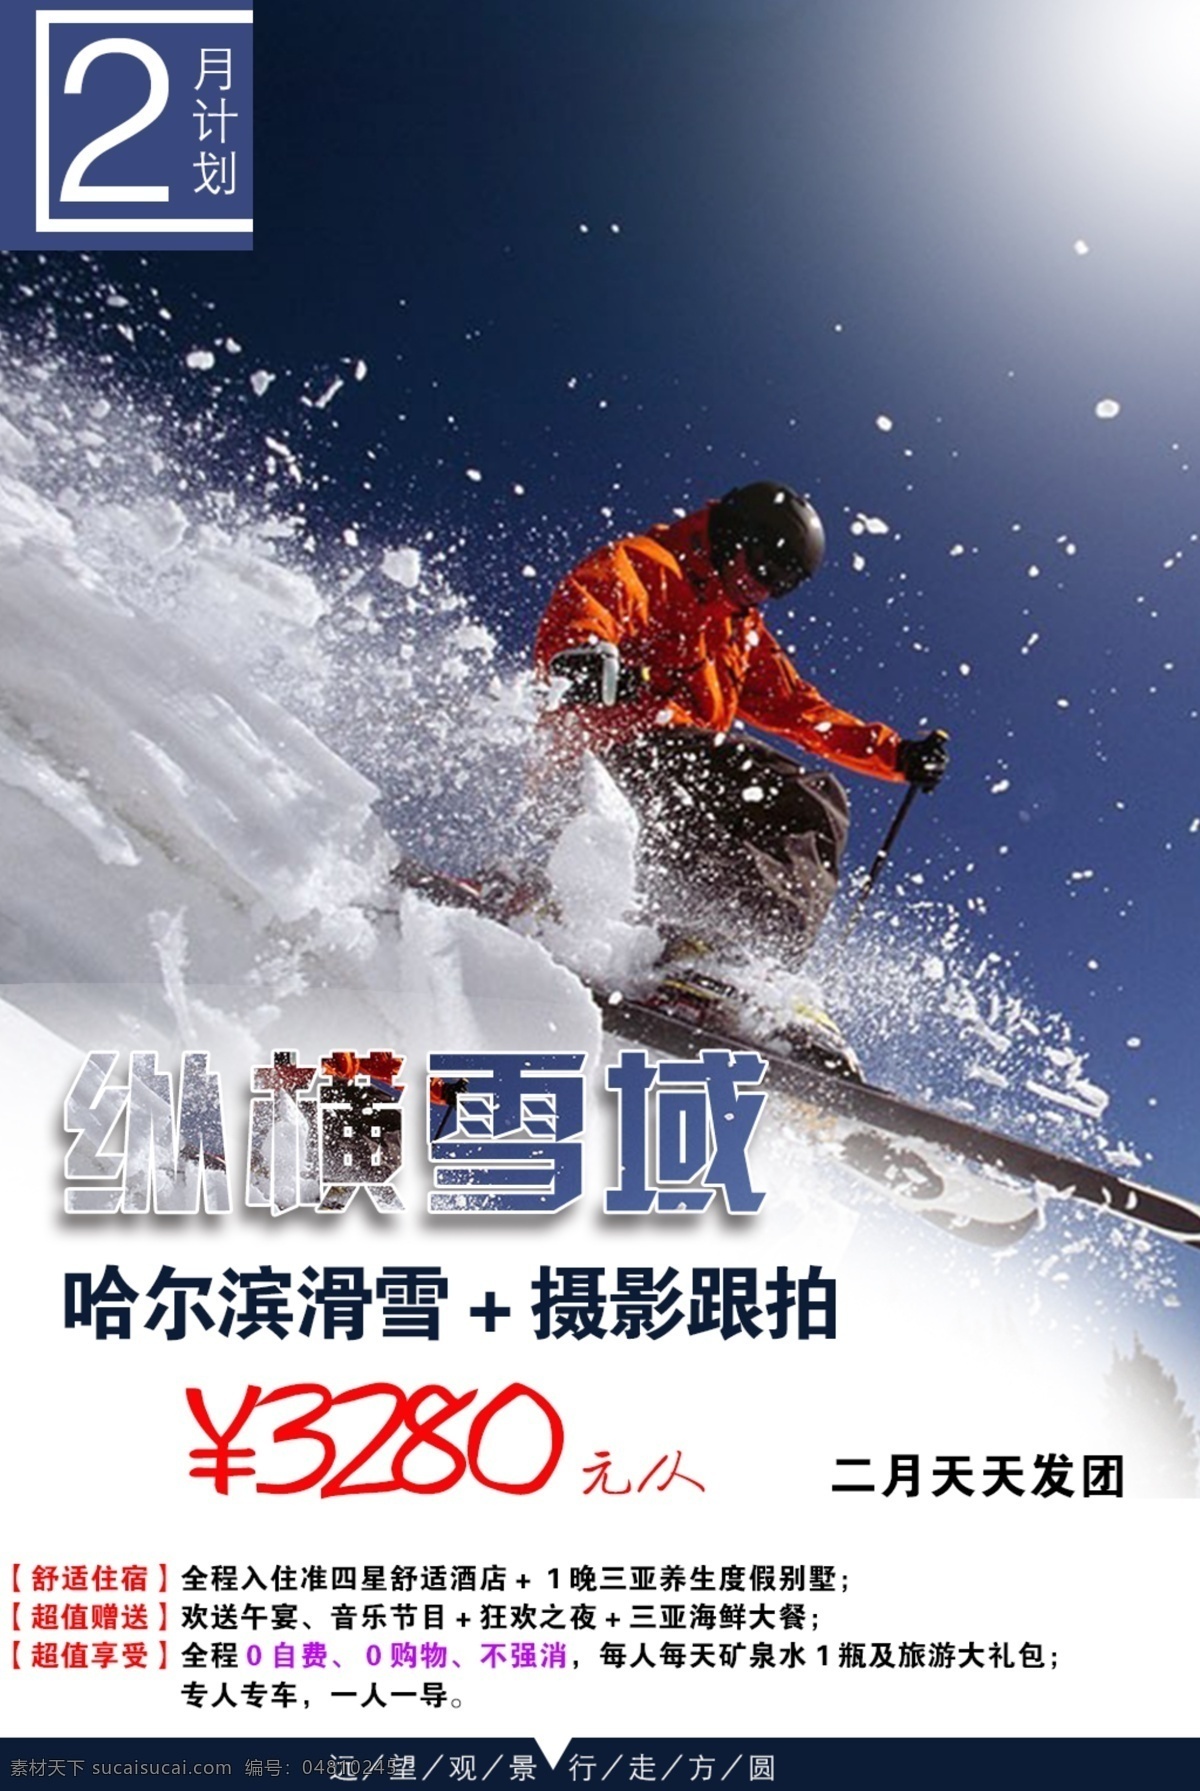 旅游海报滑雪 旅游 海报 滑雪 简单 大方